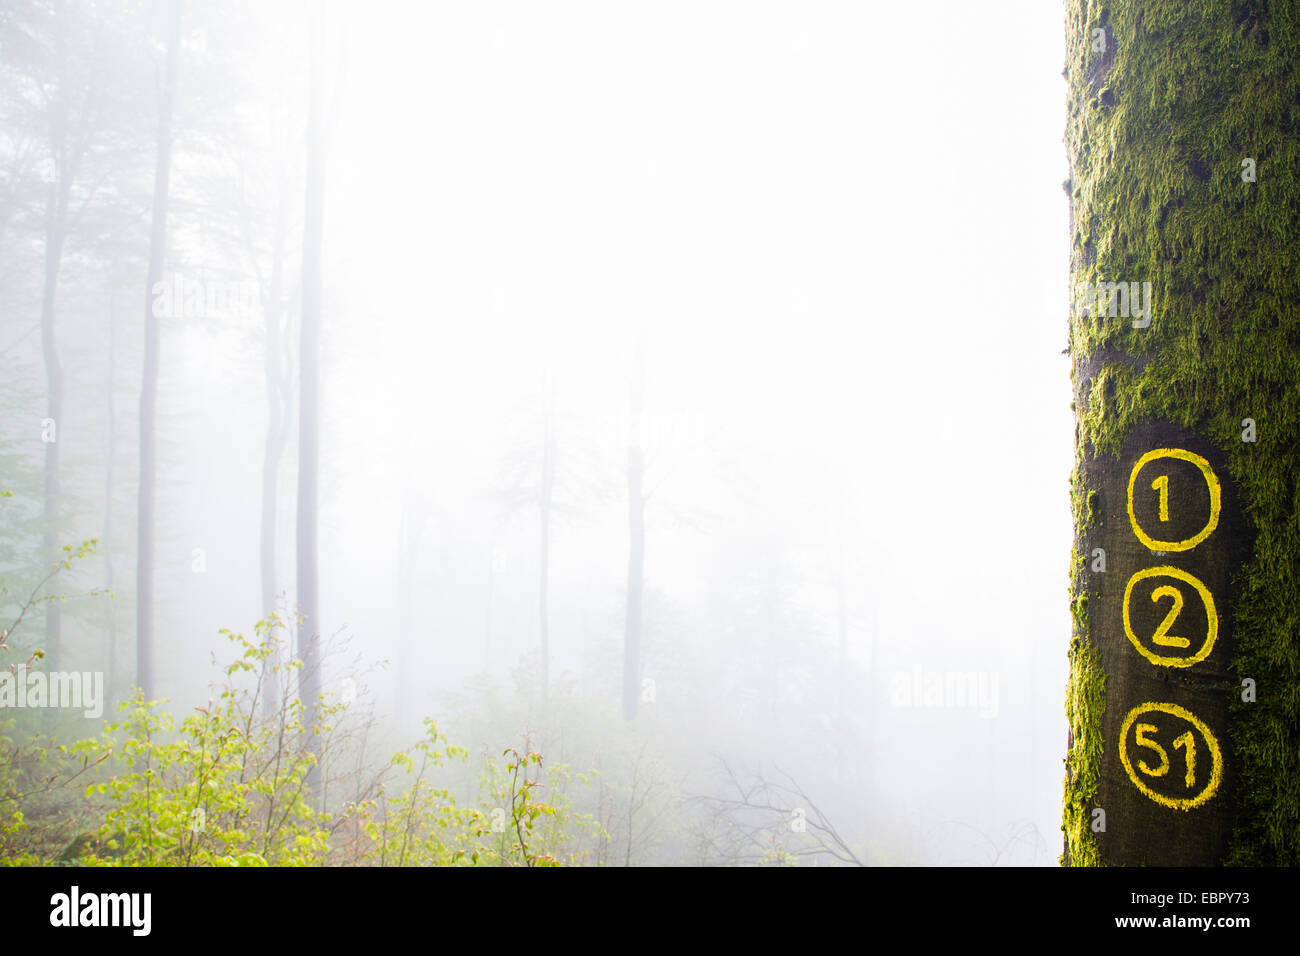 Comunes De haya (Fagus sylvatica), mossy tallo con señalización de rutas de senderismo en la niebla de la mañana, Alemania Baden-Wurtemberg, Odenwald Foto de stock